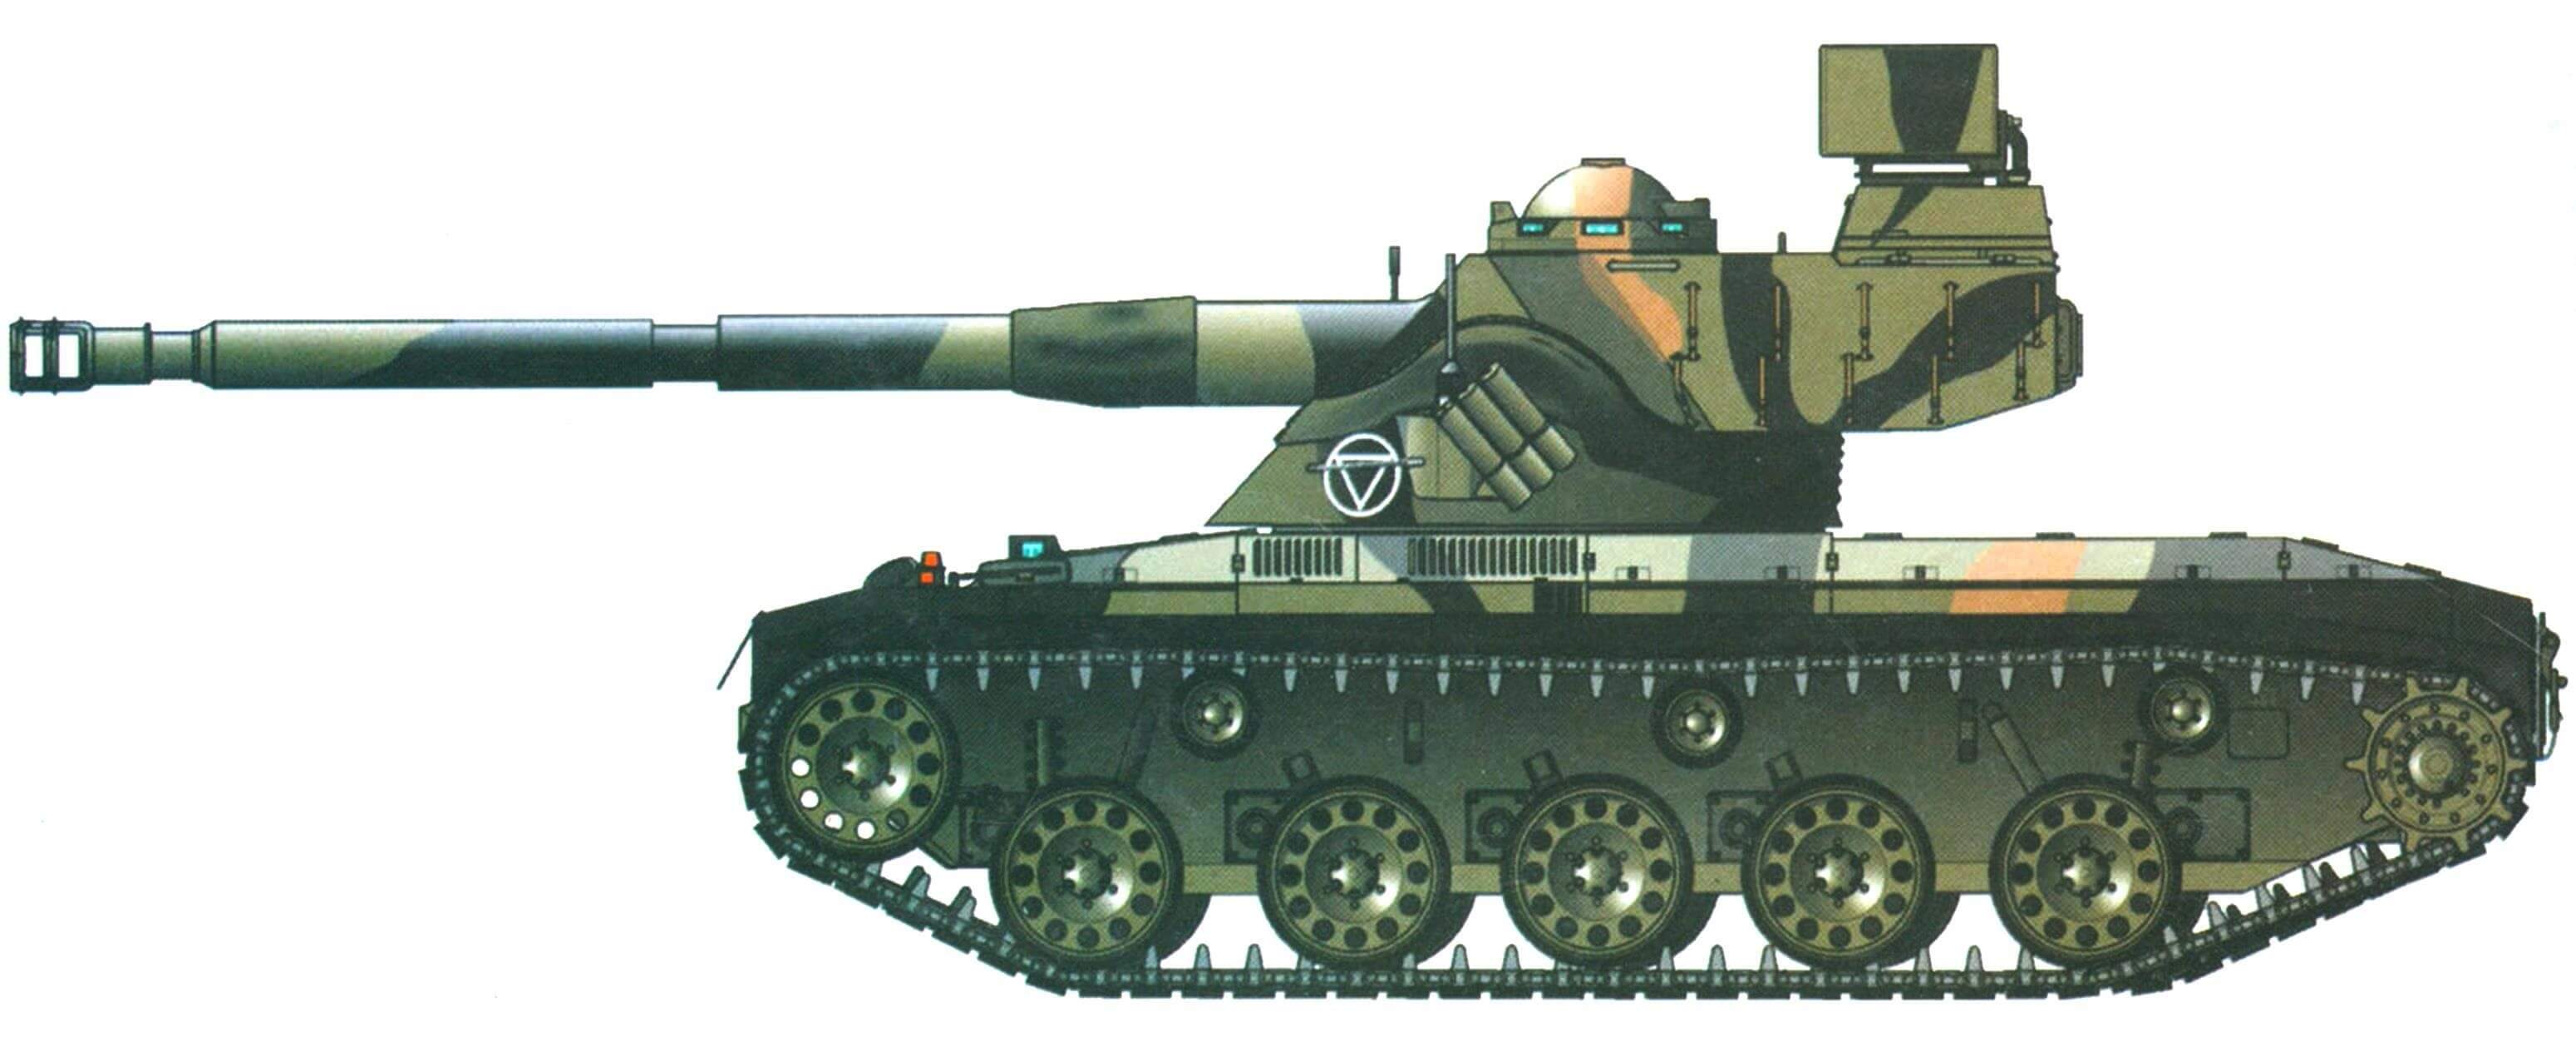 SK-105 "Кирасир" австрийской армии в камуфляже 1990-х годов